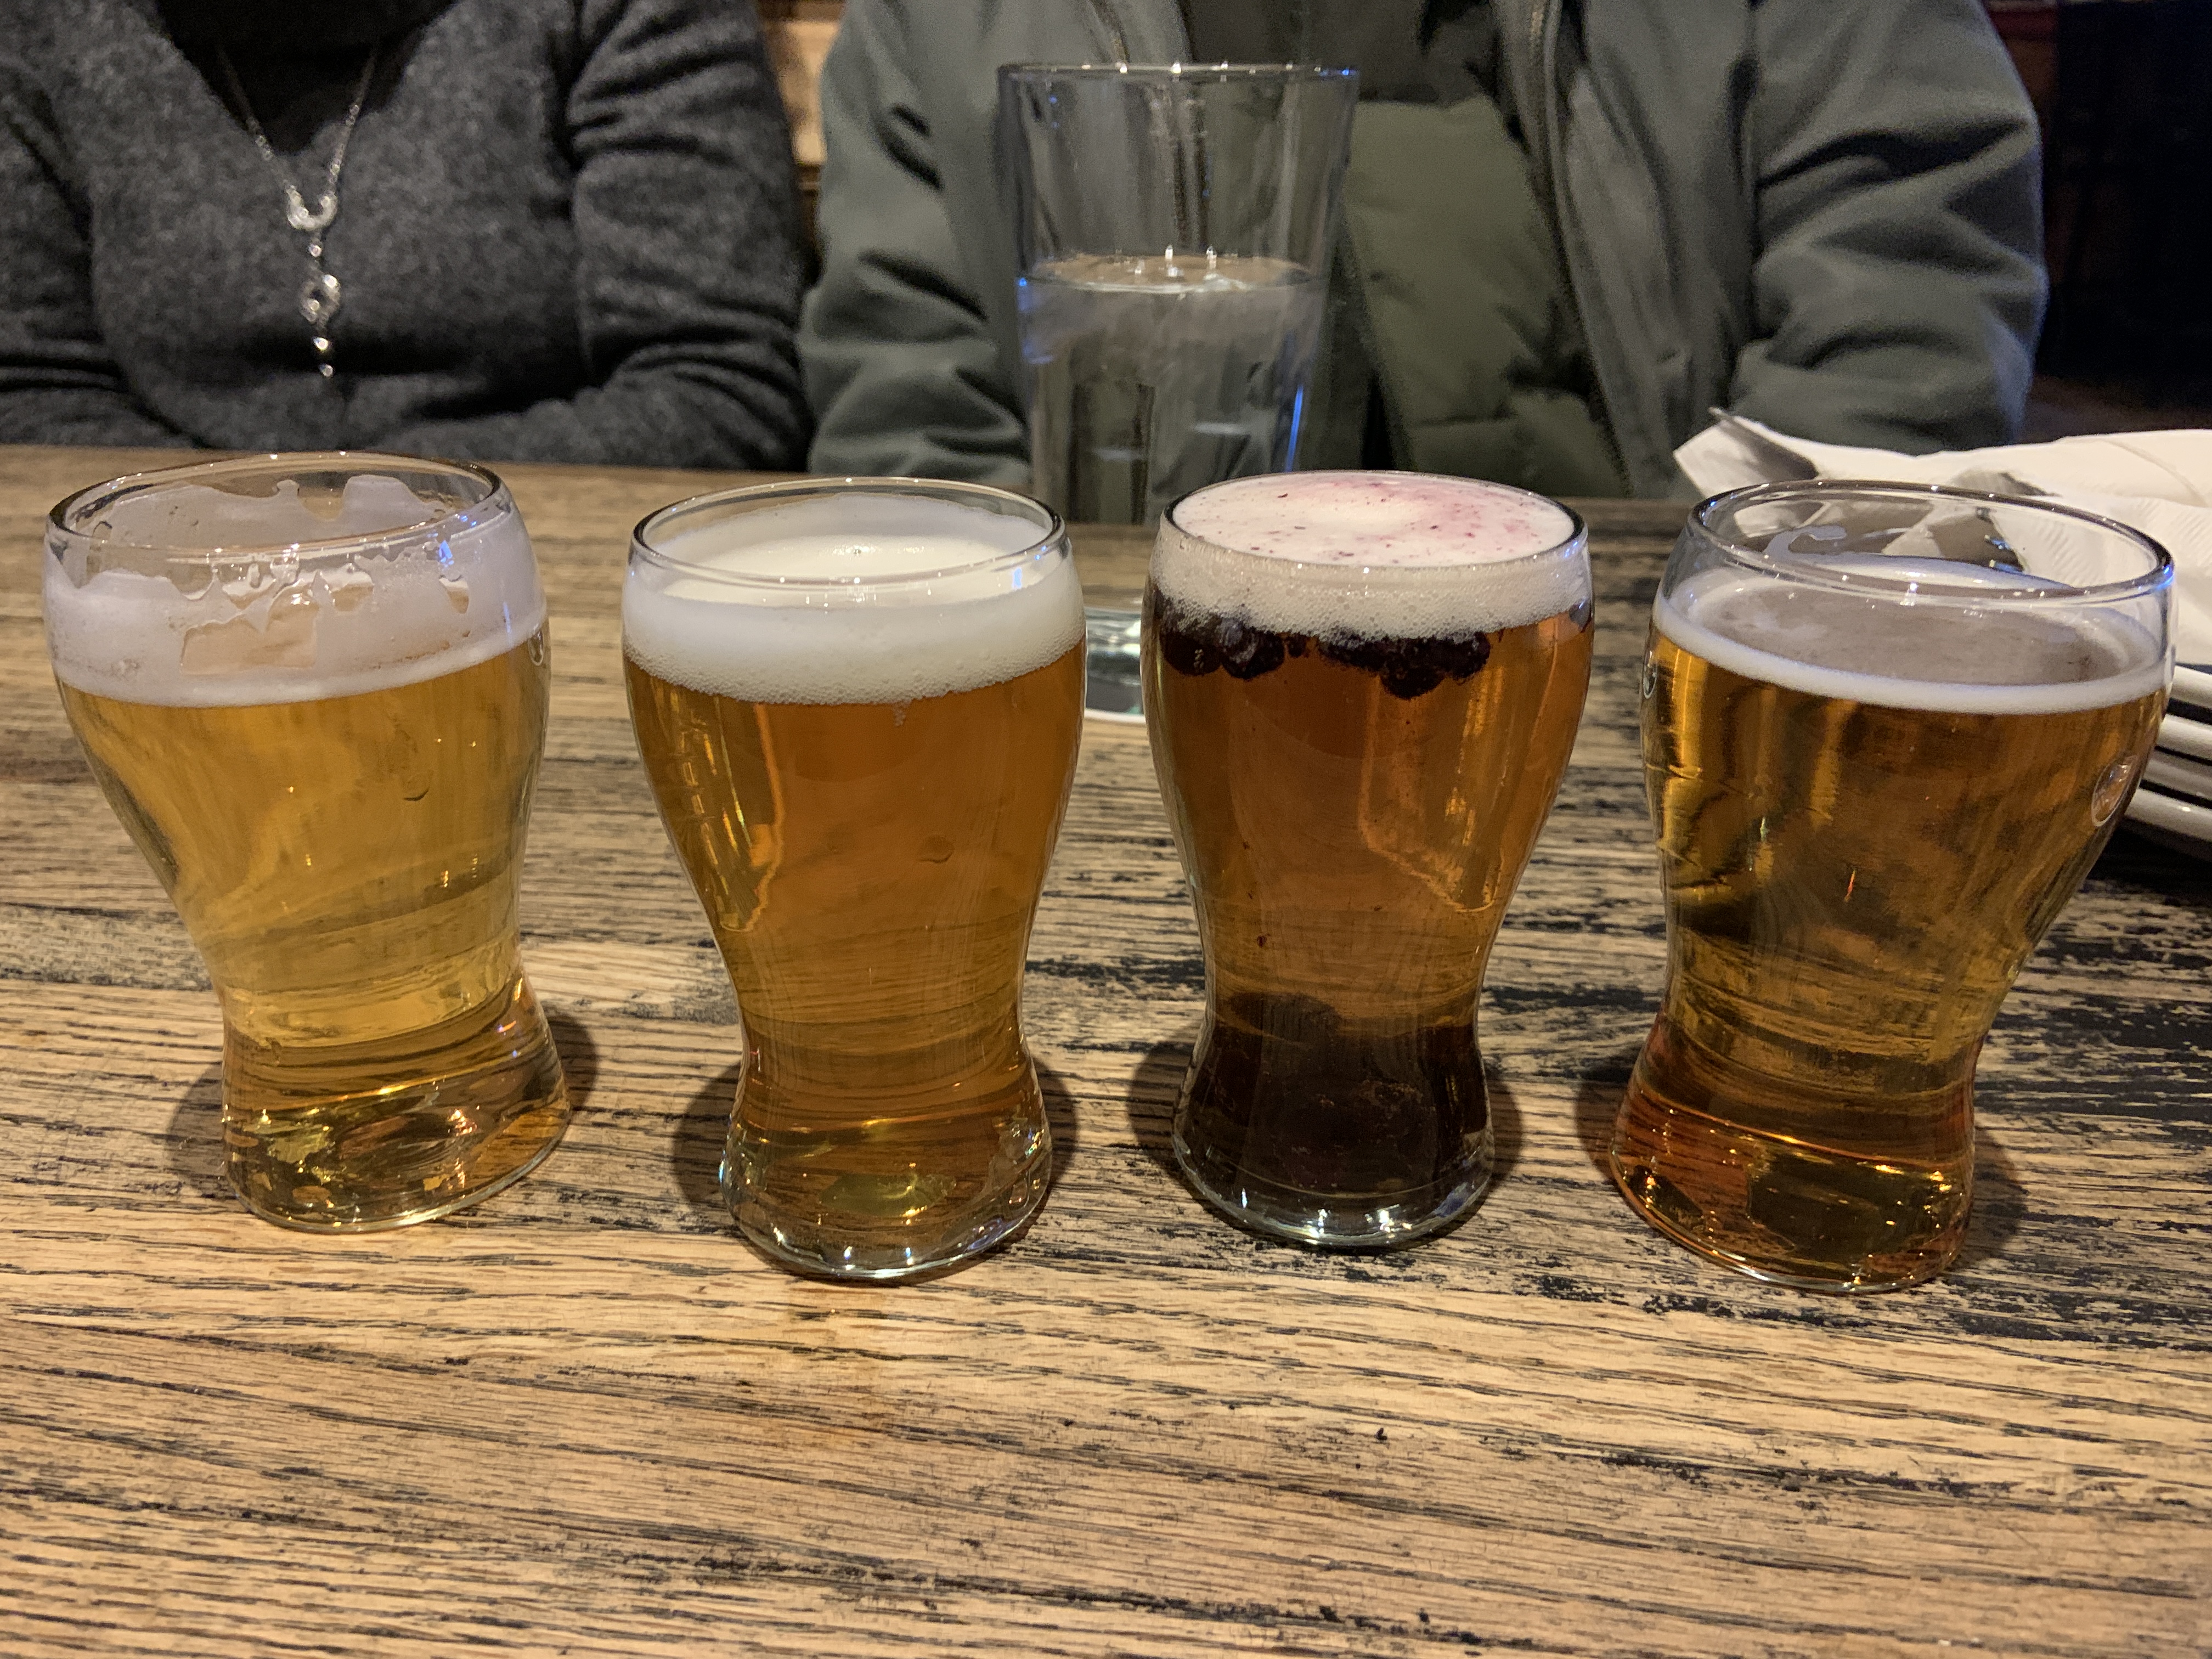 Flight of Beer at Seadog Brewery